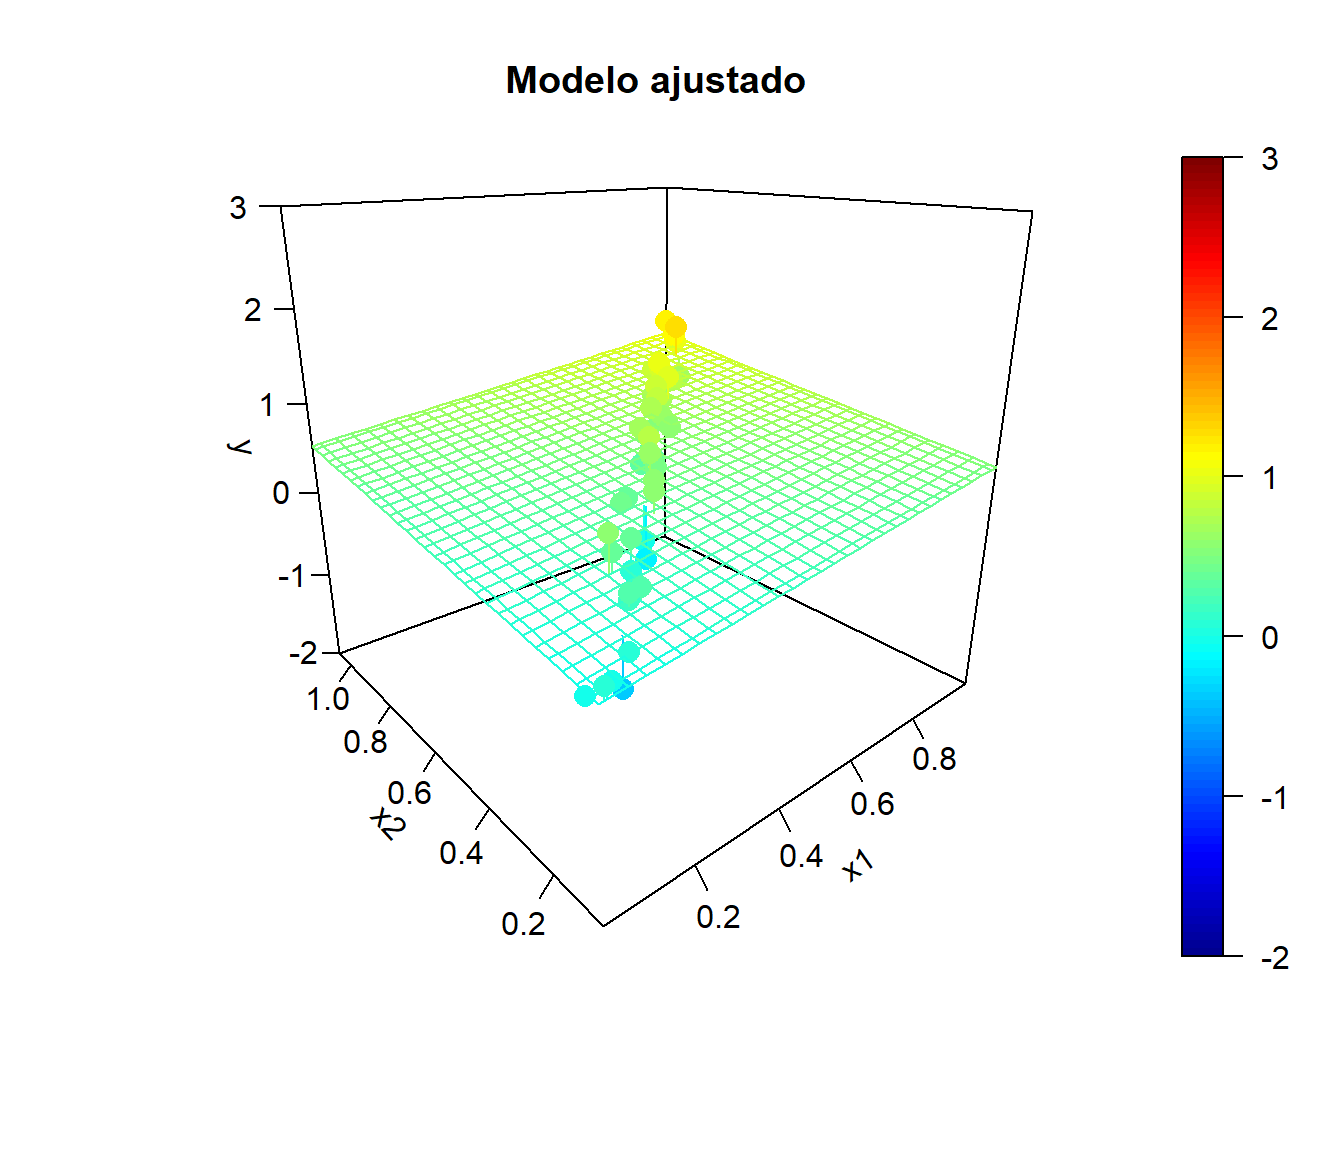 Ejemplo de simulaciones bajo colinelidad y correspondientes modelos ajustados.